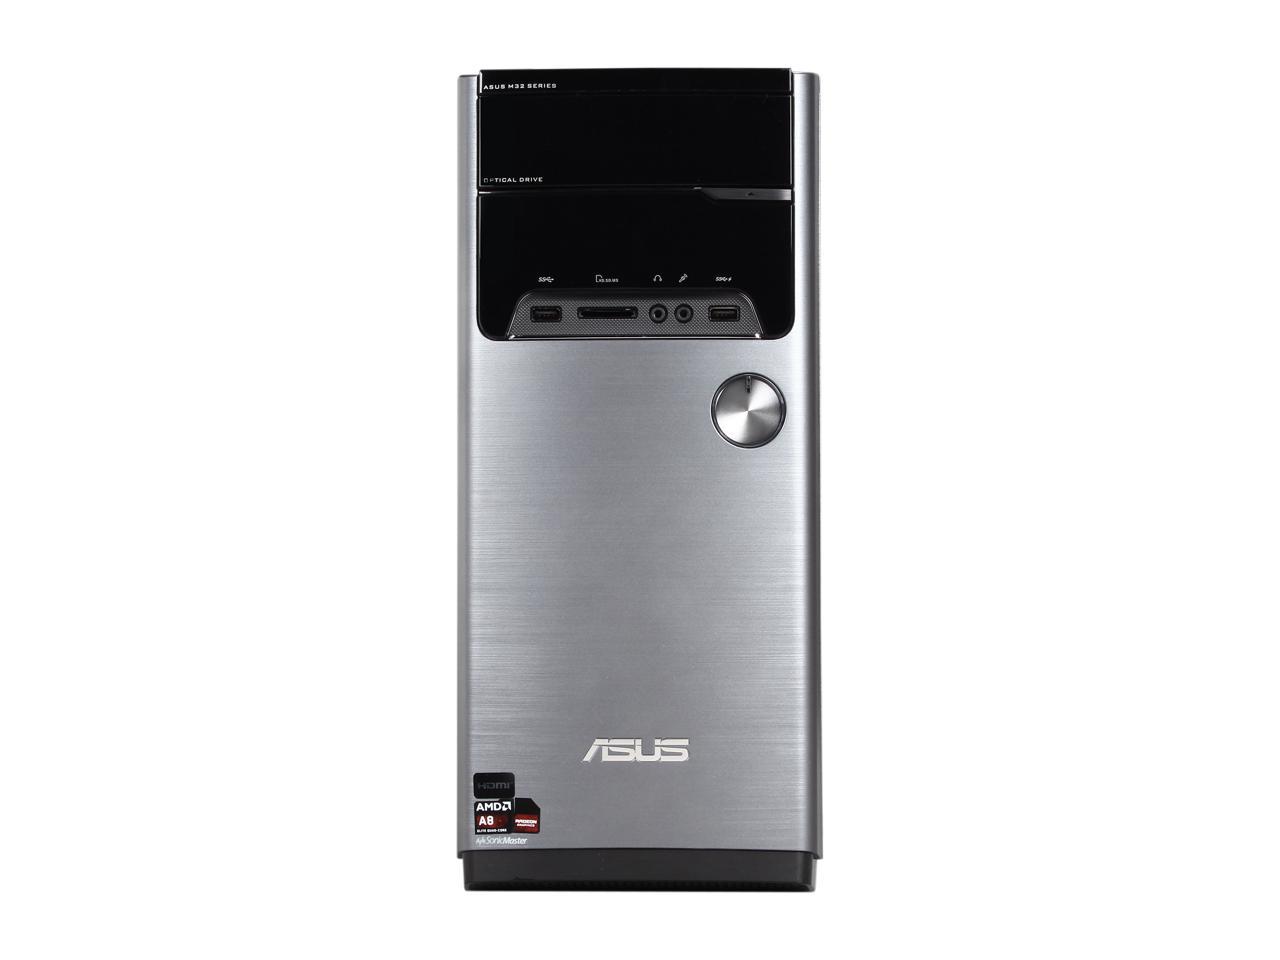 Asus Desktop Pc M32bf Us004s A8 Series Apu A8 5500 3 2 Ghz 4 Gb Ddr3 1 Tb Hdd Amd Radeon Hd 7560d Windows 10 Pro 64 Bit Cyber Tera